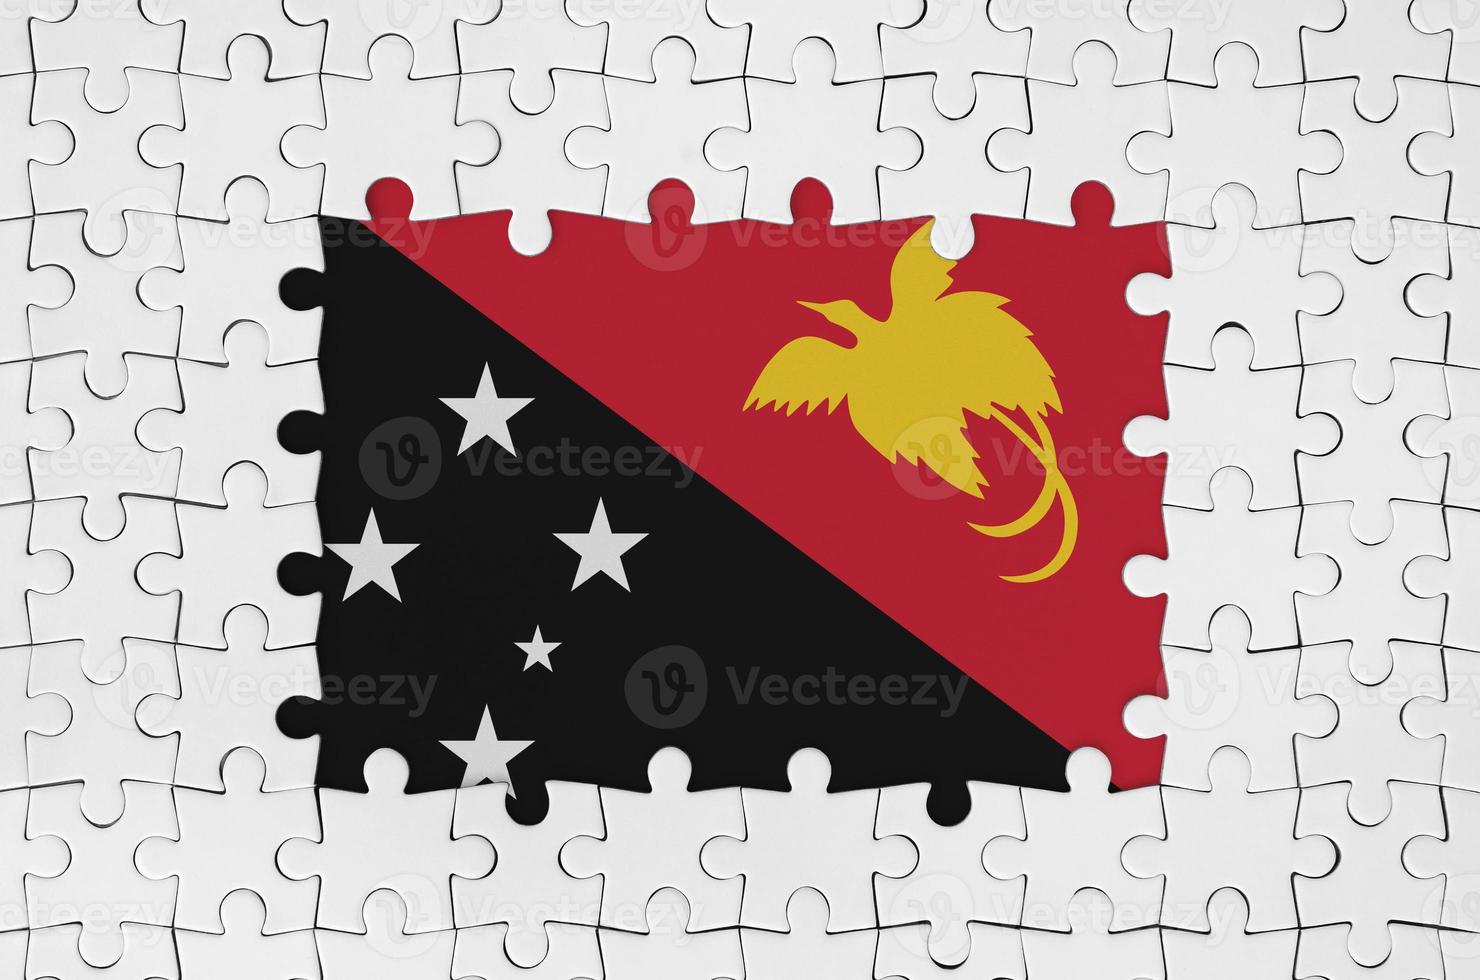 bandeira de papua nova guiné em quadro de peças de quebra-cabeça brancas com falta de parte central foto